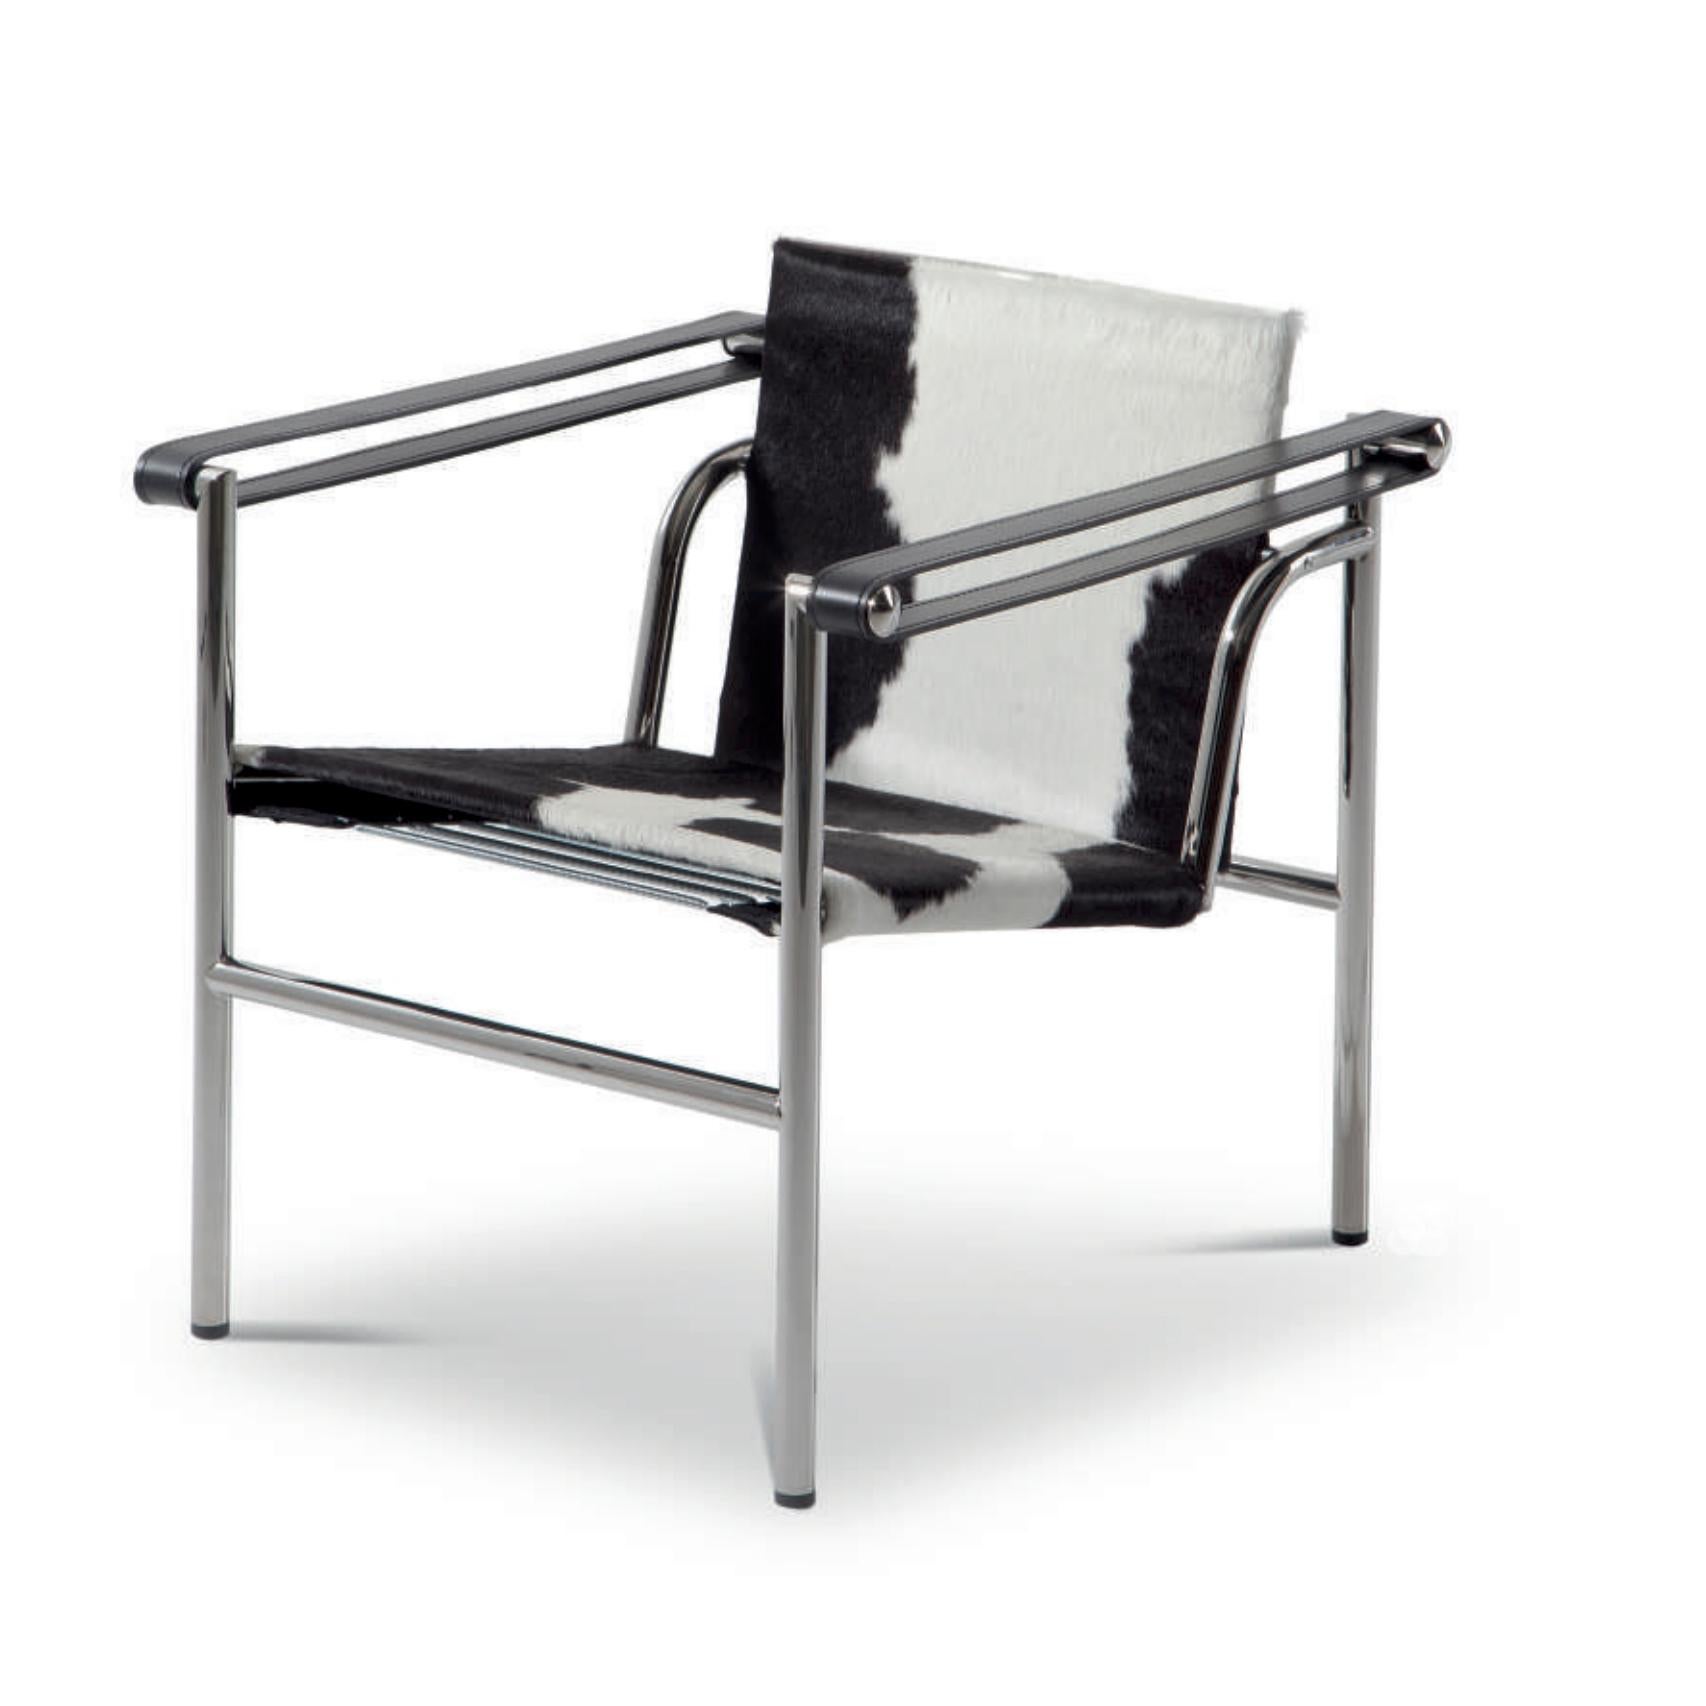 Chaise conçue par Le Corbusier, Pierre Jeanneret, Charlotte Perriand en 1928. Relancé en 1965.
Fabriqué par Cassina en Italie.

Une chaise légère et compacte conçue et présentée au Salon d'Automne de 1929 avec d'autres modèles importants, tels que